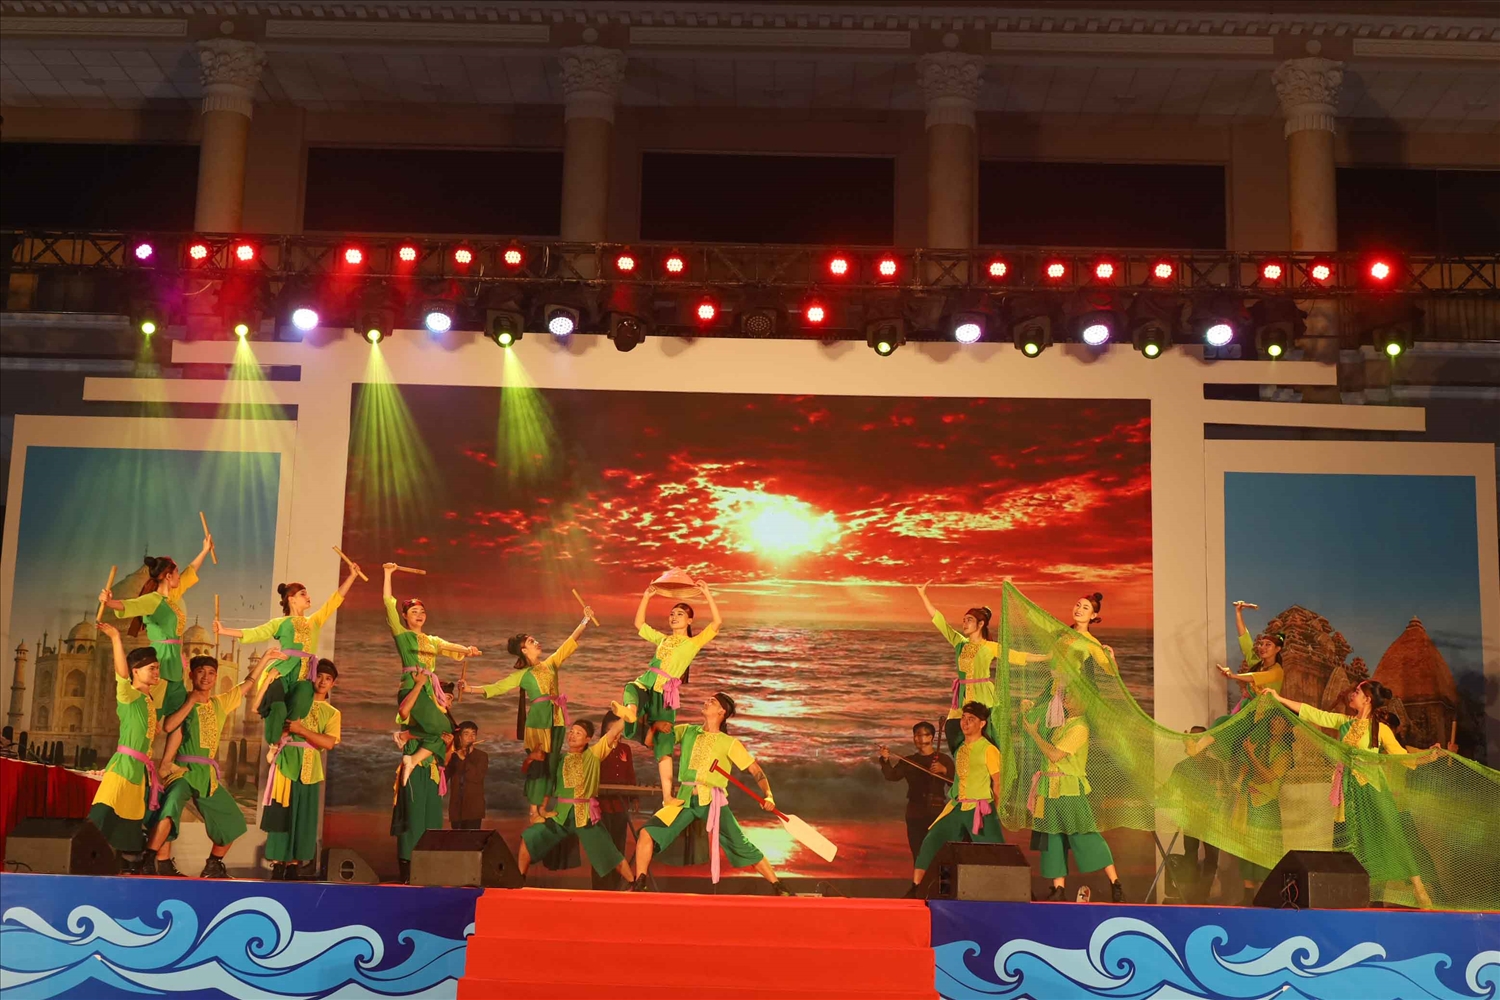 Tiết mục múa dân gian kết hợp biểu diễn nhạc cụ dân tộc với tên gọi Bình minh biển do Đoàn ca múa nhạc Hải Đăng biểu diễn.